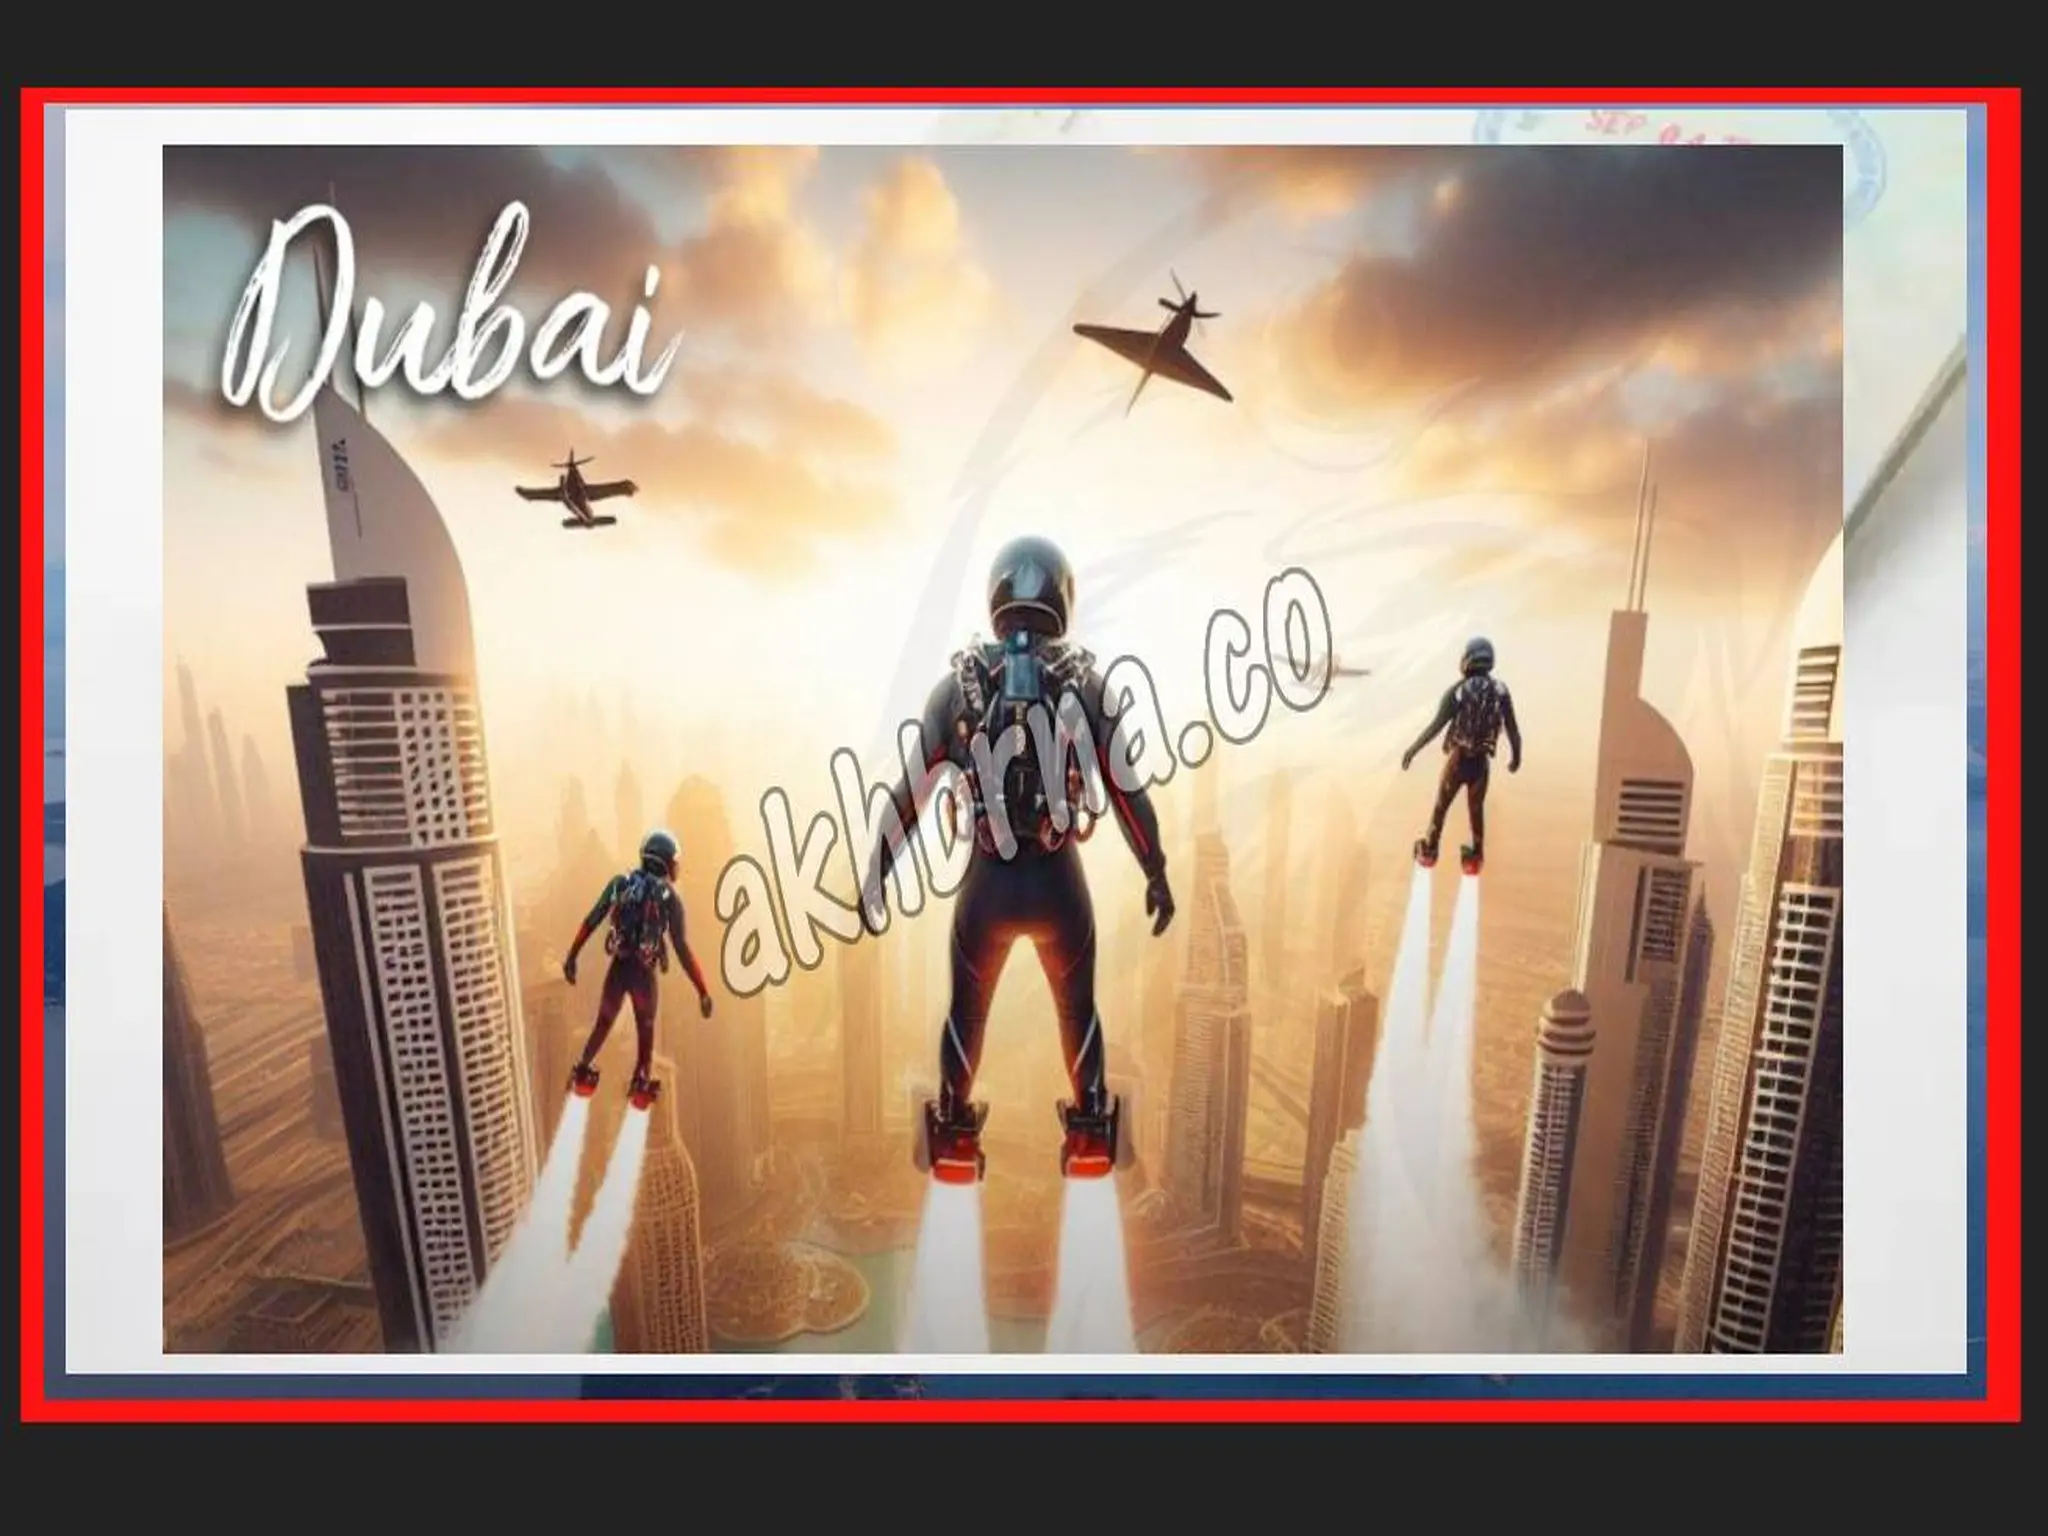 Dubai announces hosting the World’s First Jet Suit Race